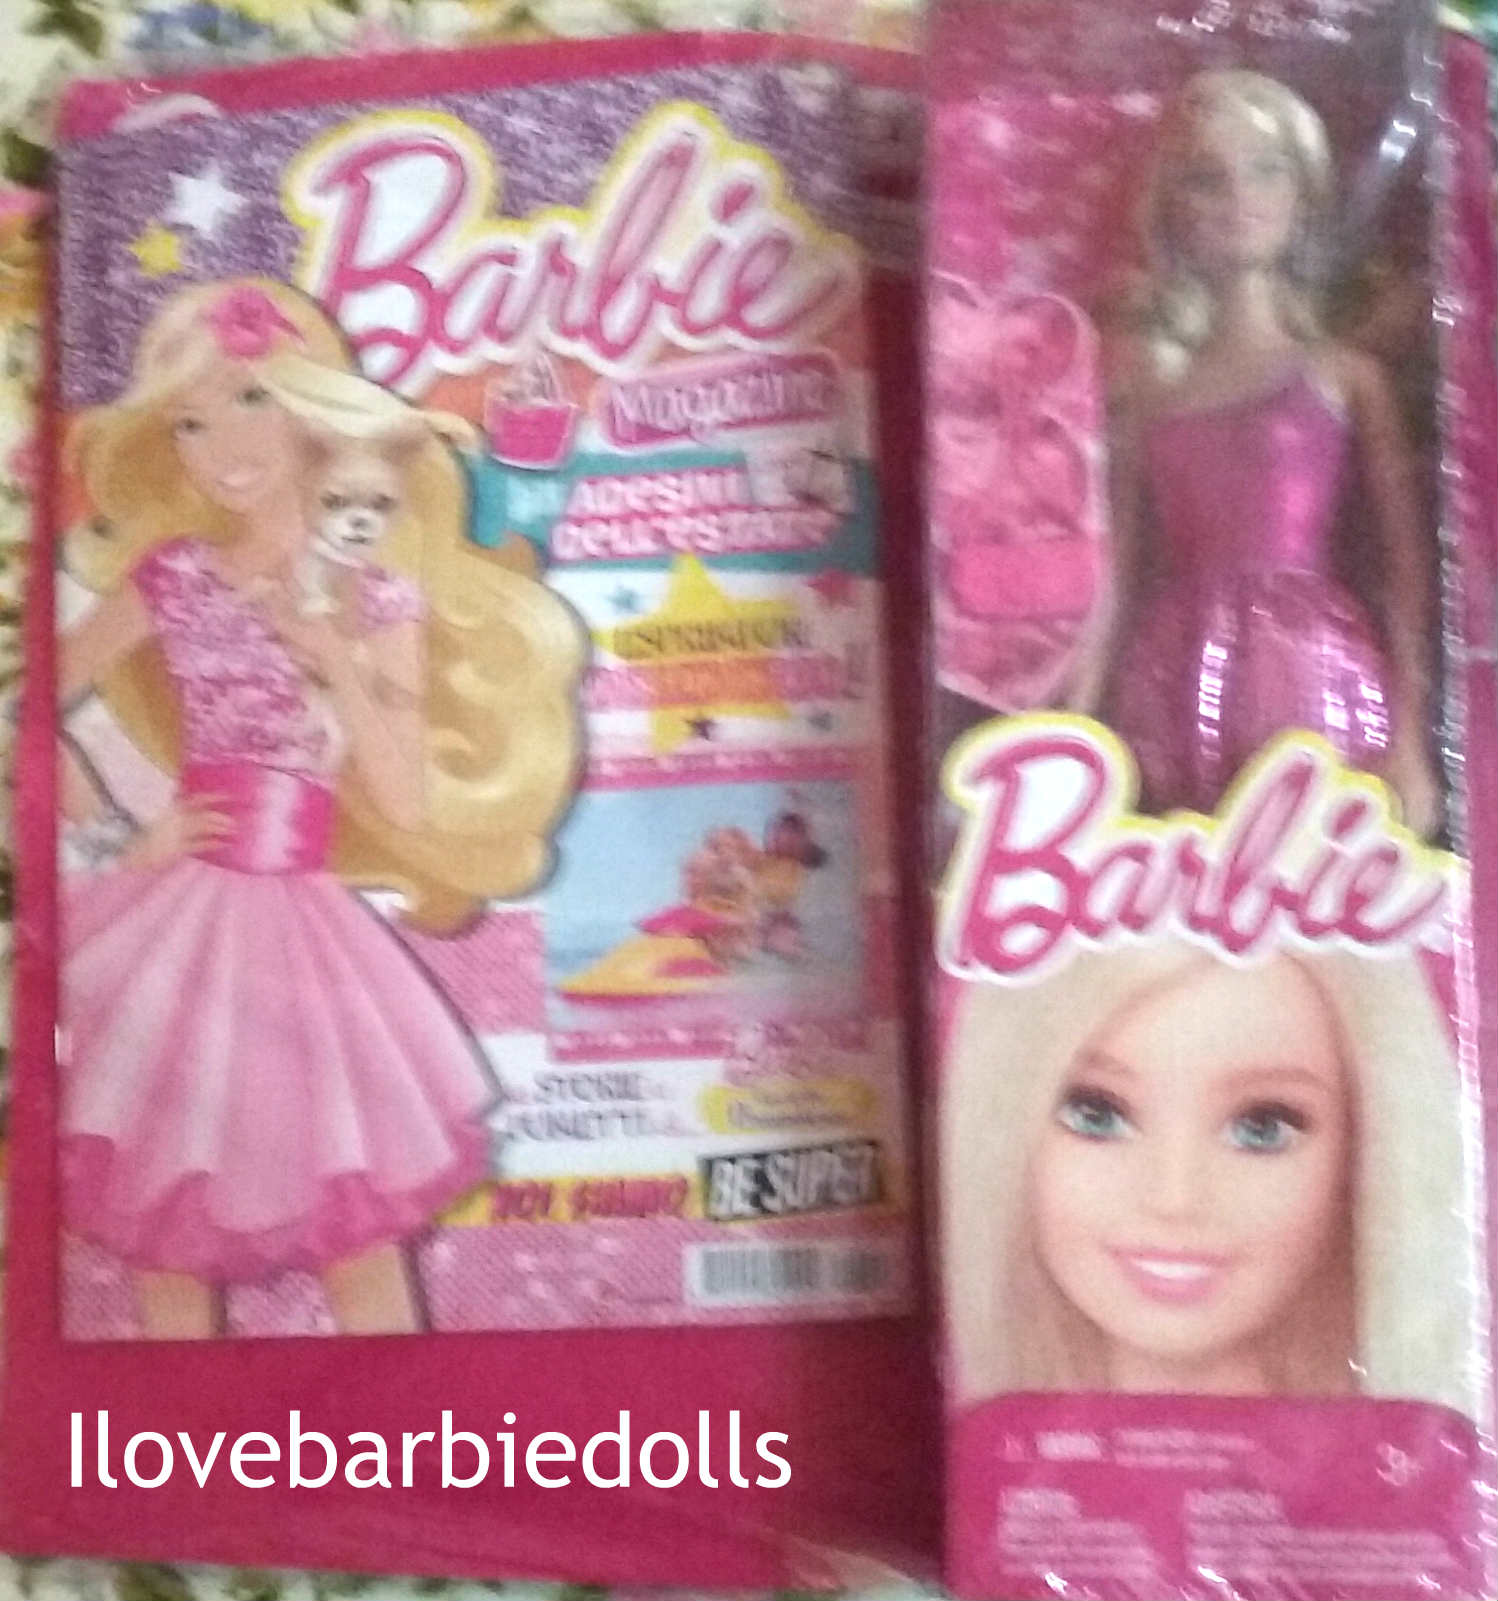 edicola barbie